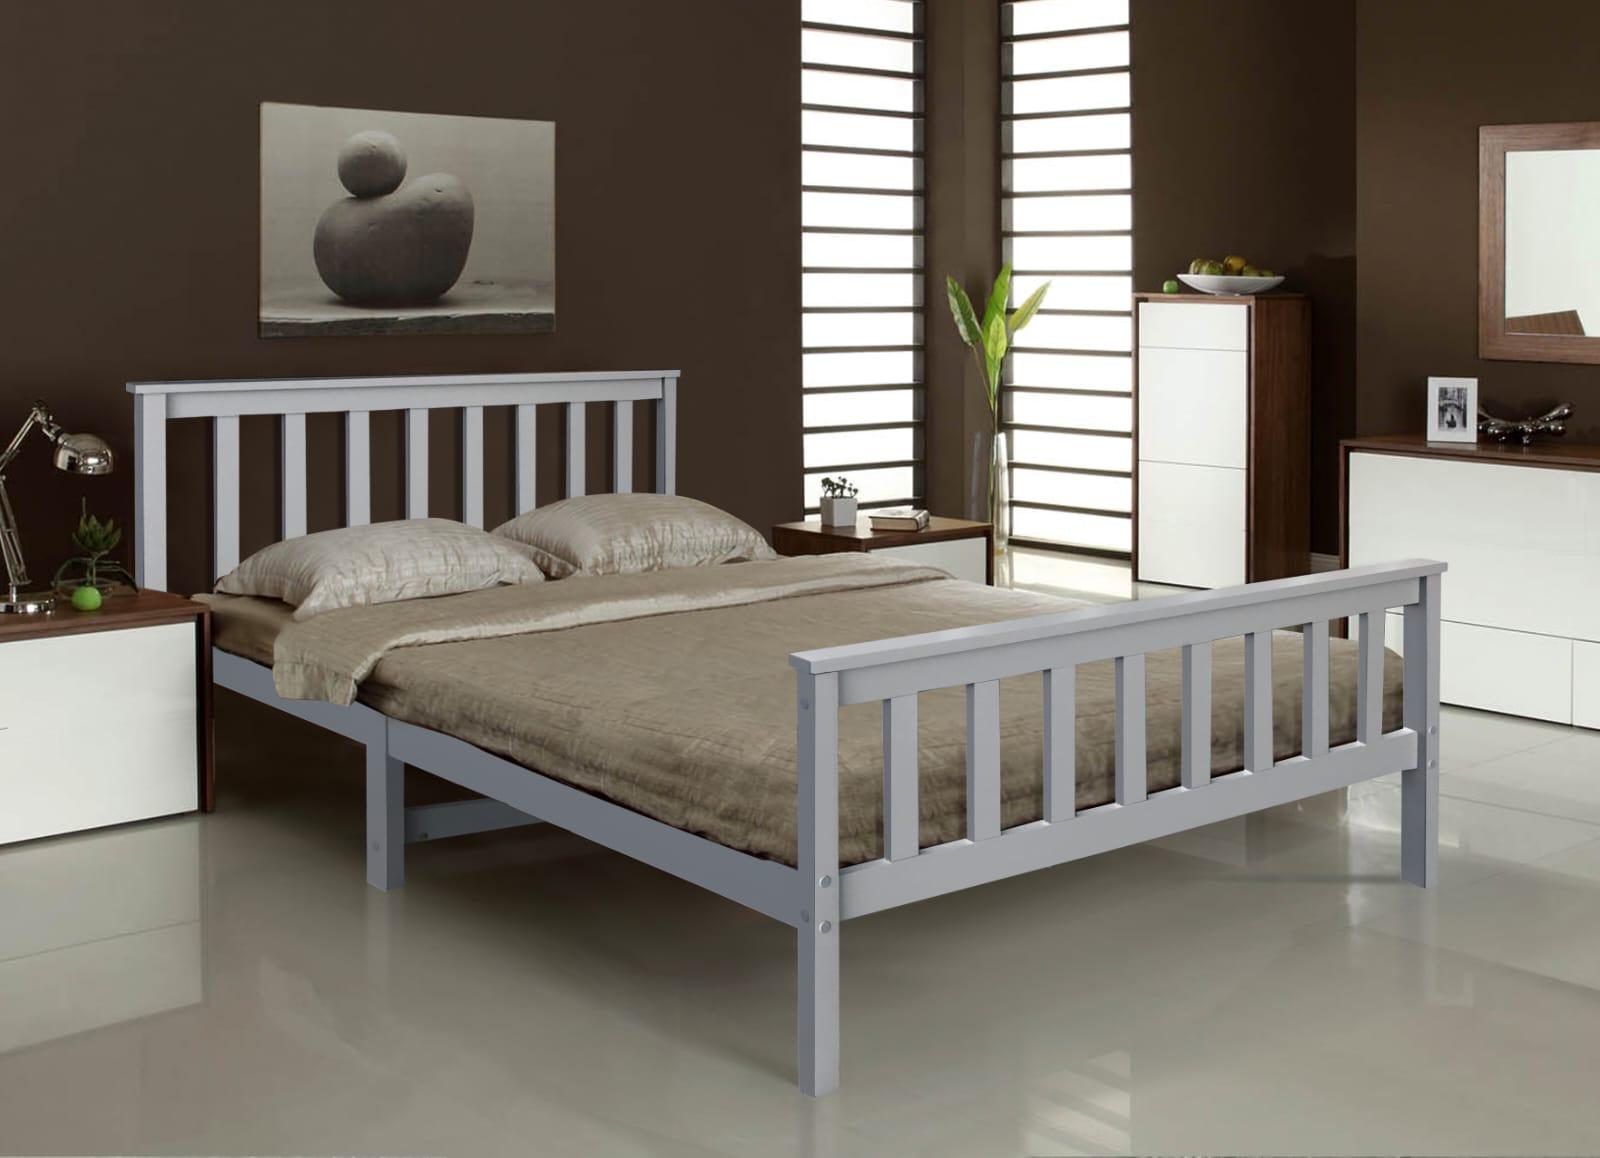 foam mattress bed frame plans